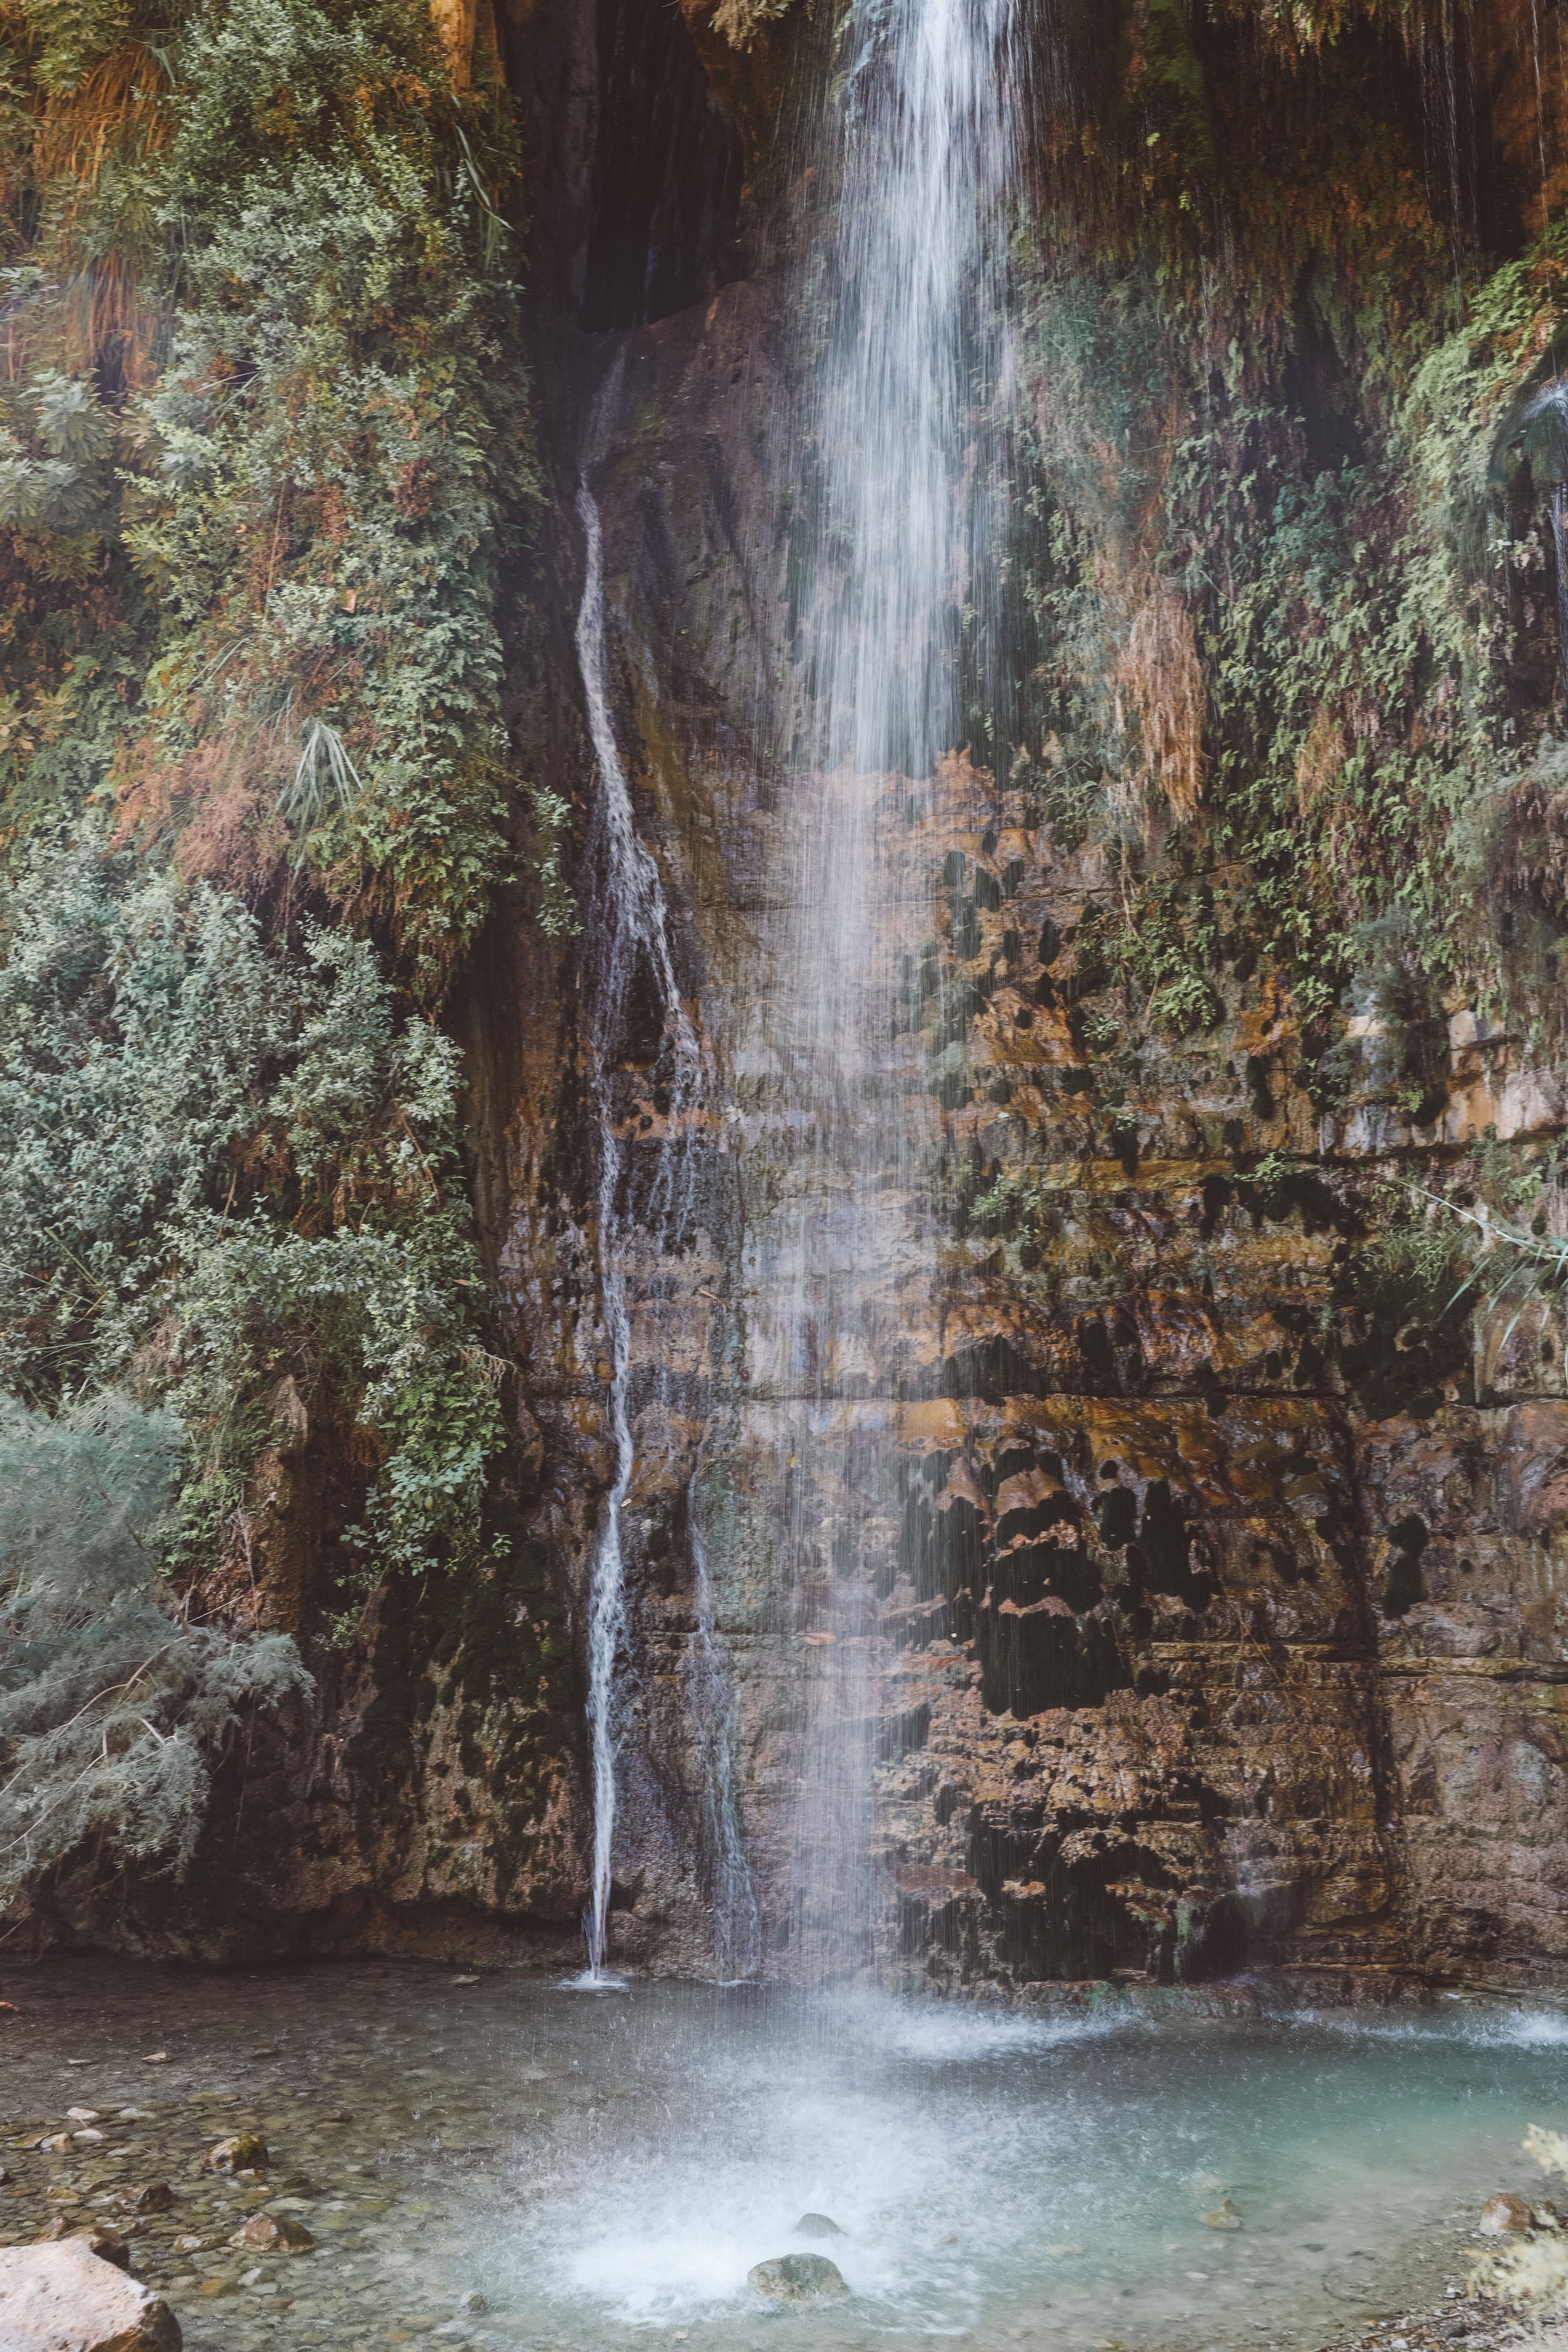 La cascade de David - Ein Guedi - Israël